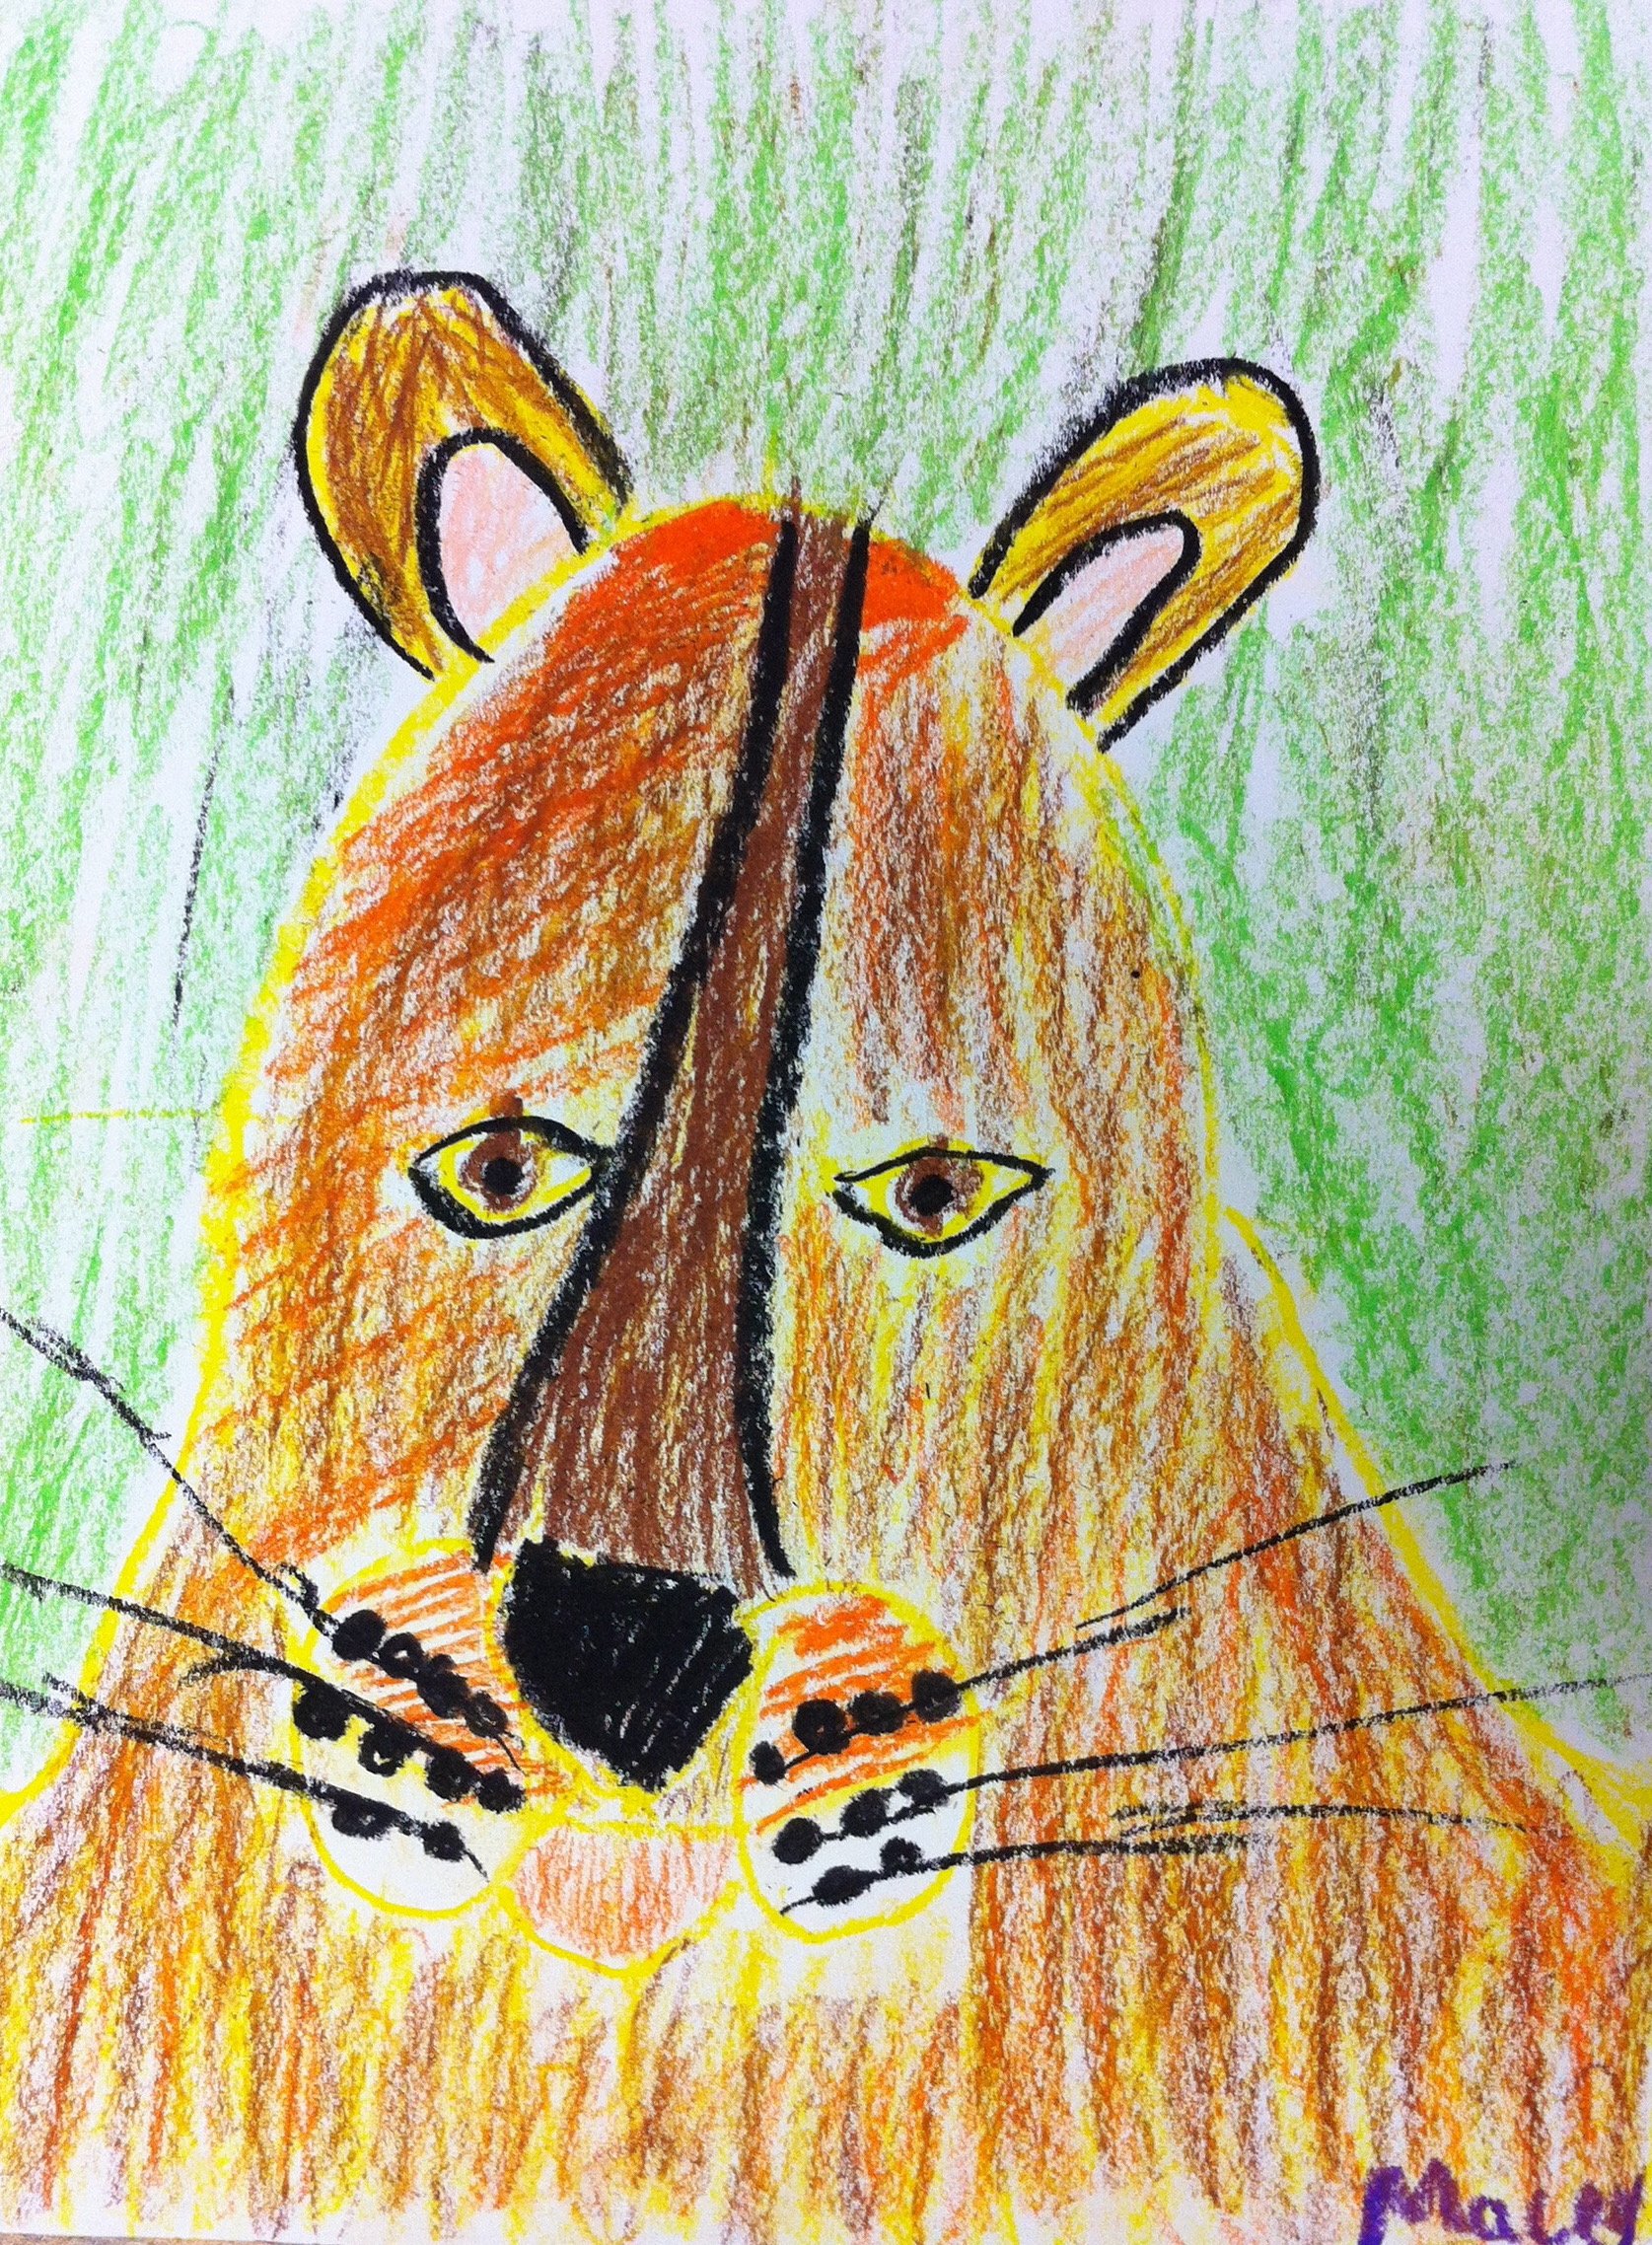 mountian lion drawing.JPG